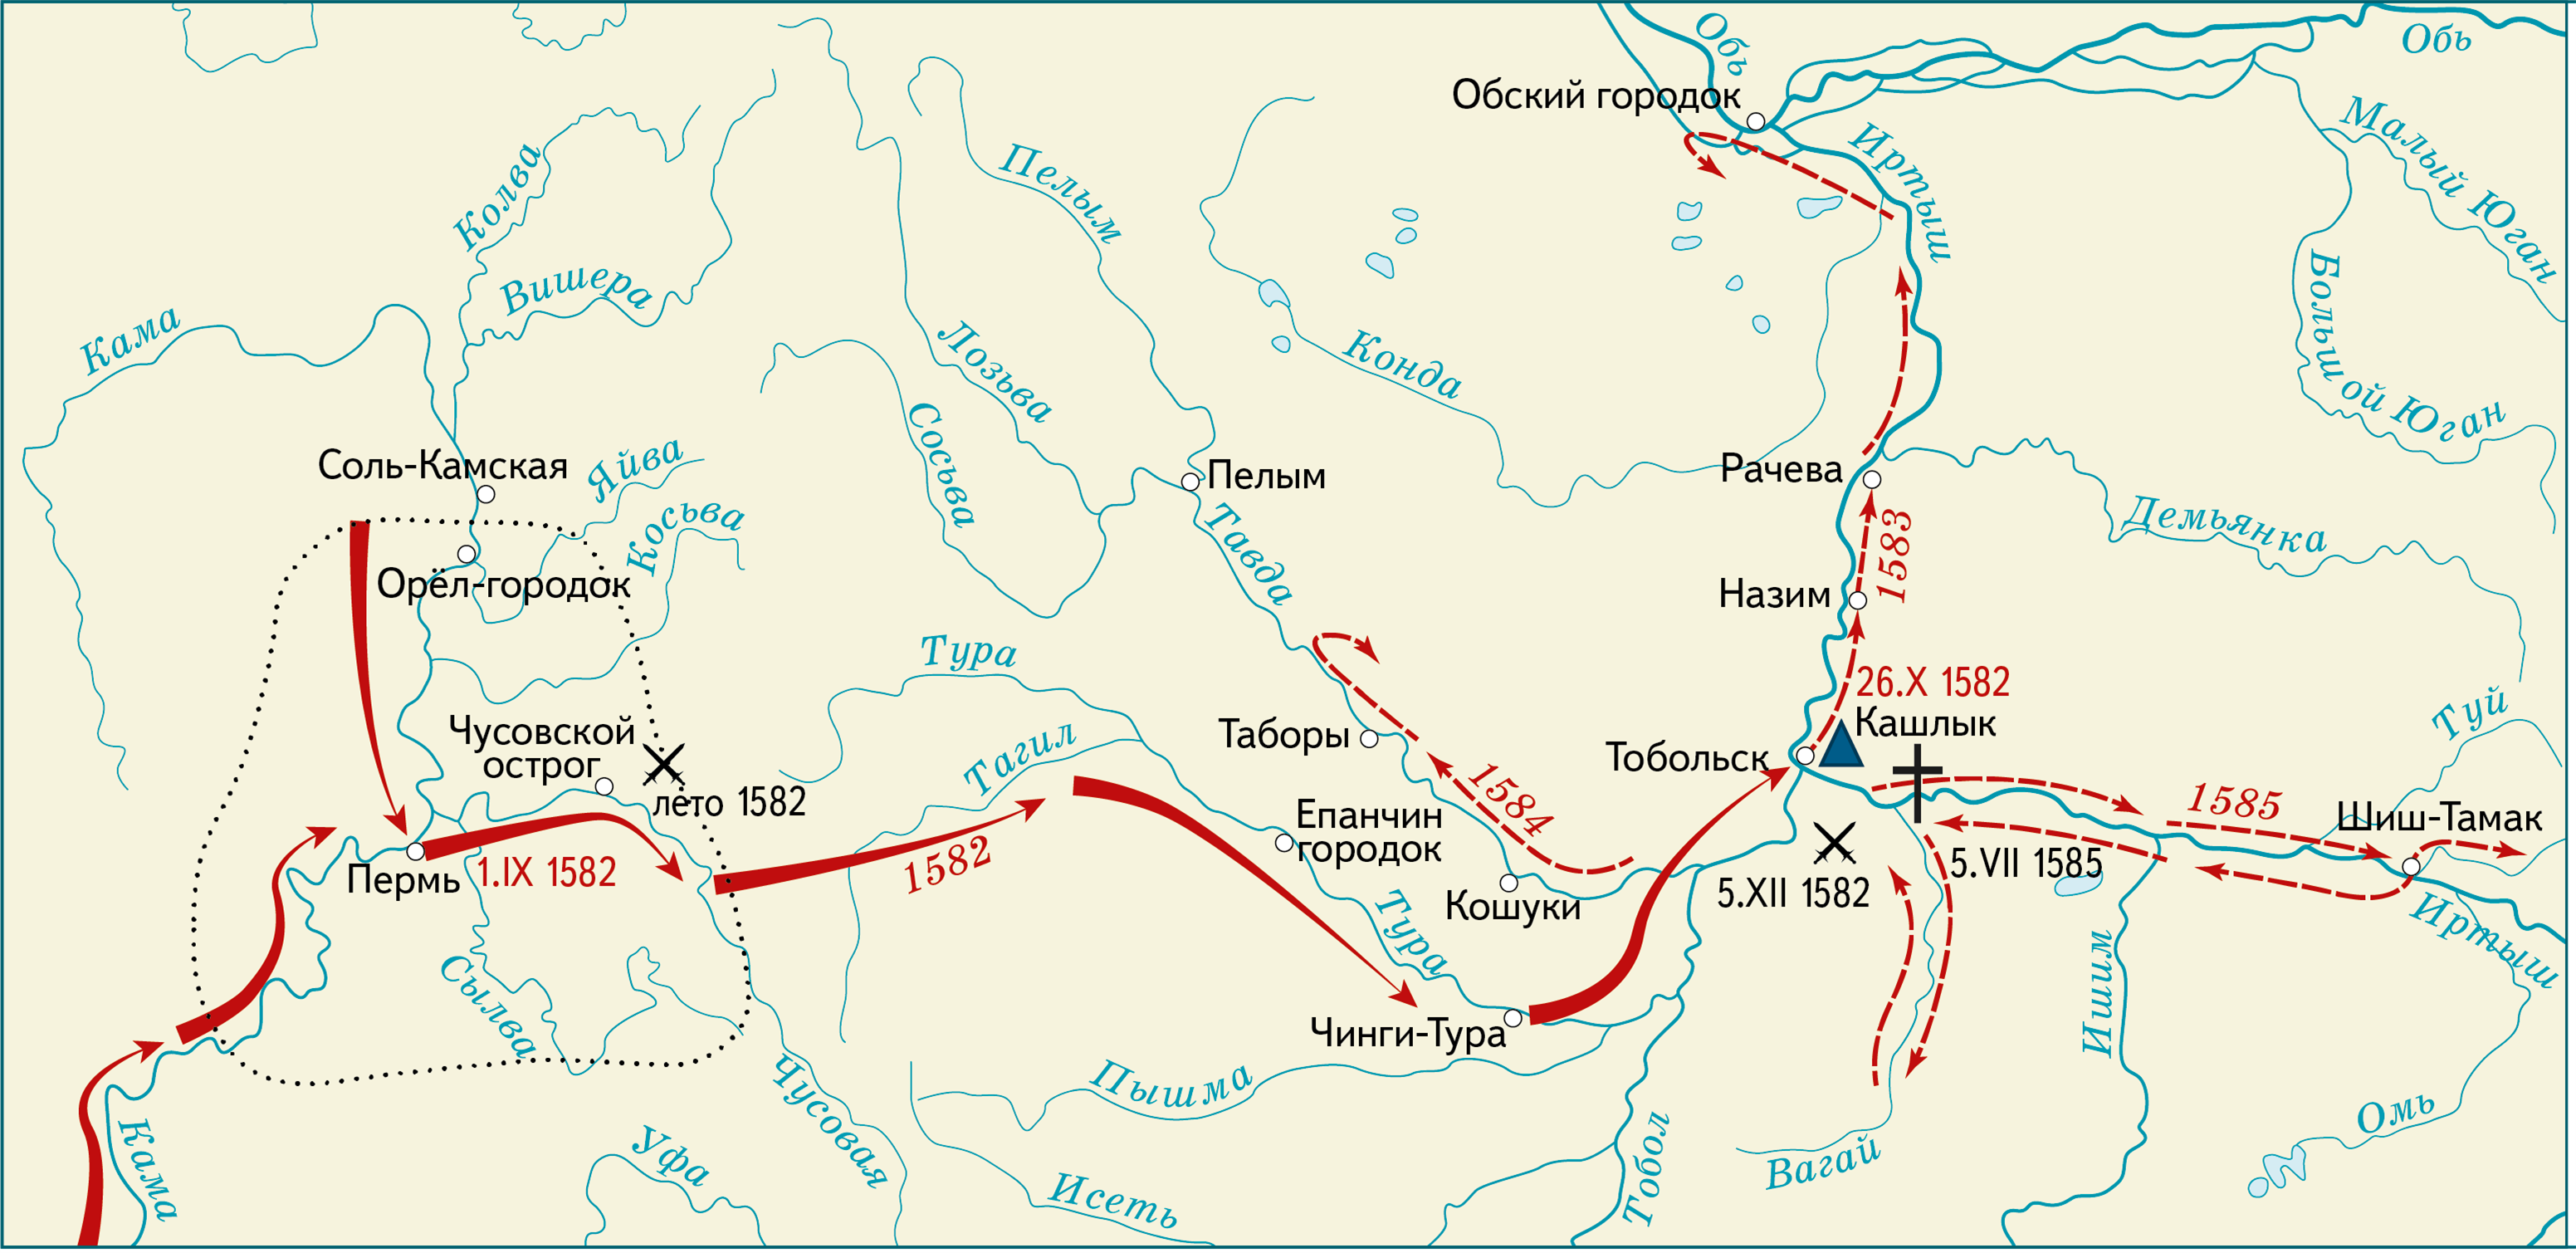 Ближайшая хана. Поход Ермака в Сибирь 1581-1585. 1581 Поход Ермака в Сибирь. Карта поход Ермака в Сибирь 1581.